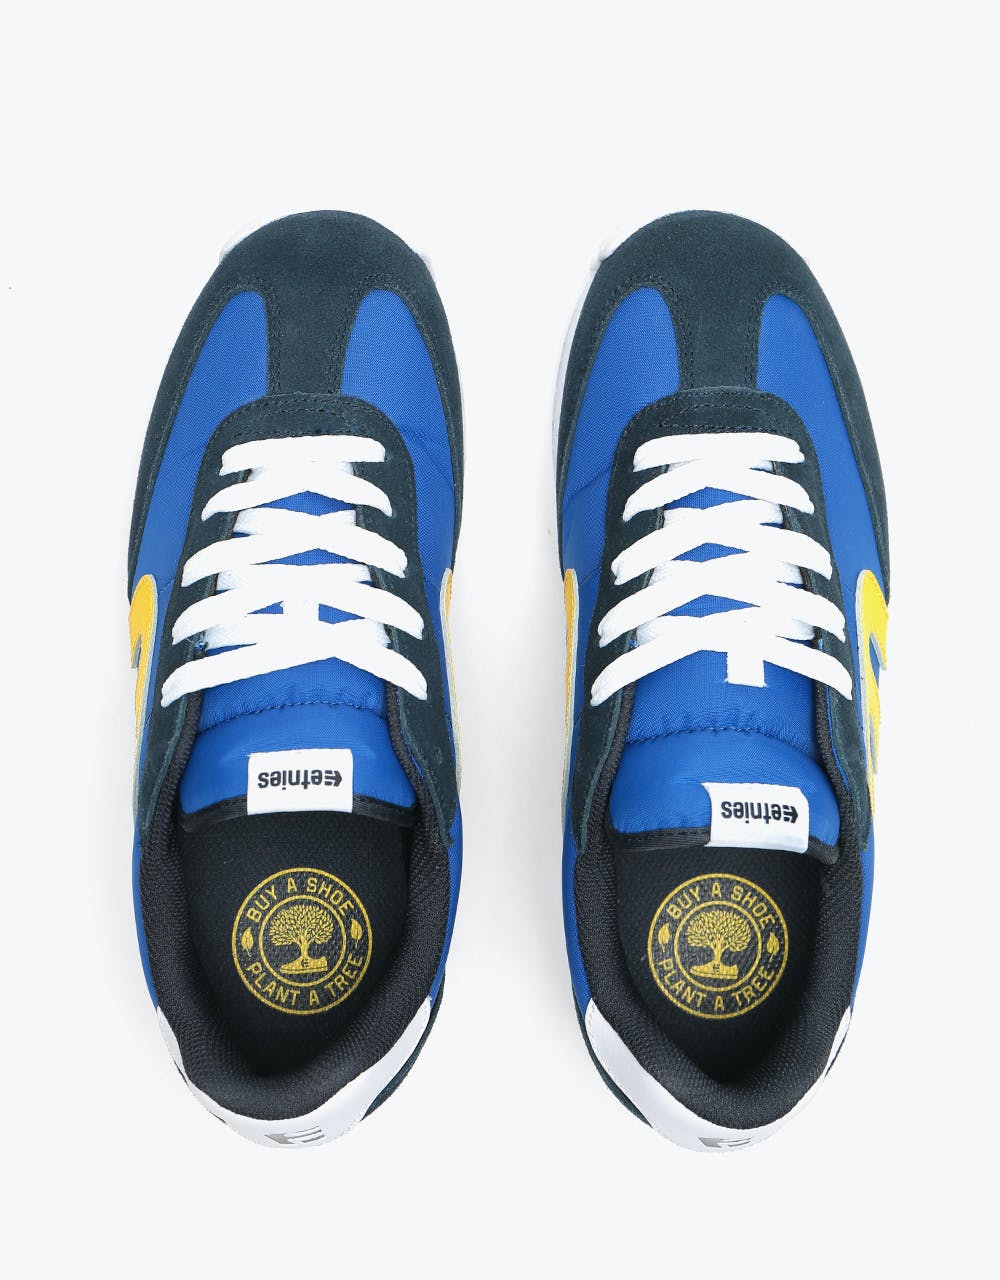 Etnies Lo-Cut CB Skate Shoes - Navy/Blue